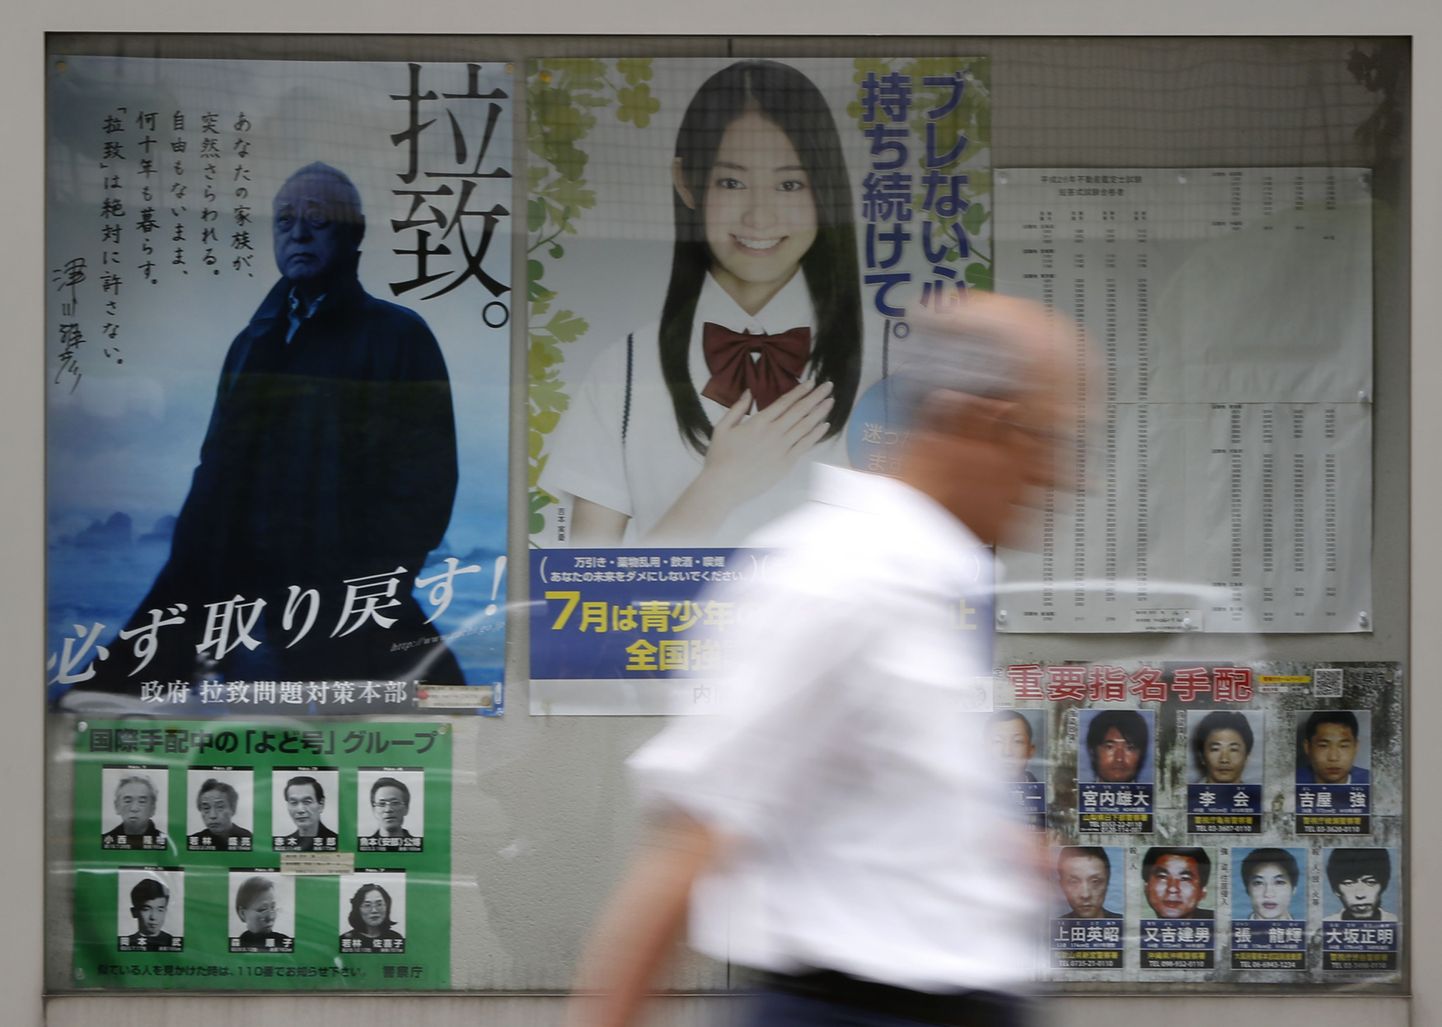 Kampaaniaplakatid Tokyos, millel on Põhja-Korea poolt röövitud isikute fotod ja nimed. Plakatitel on kirjas «Röövimine» ja «Ükskõik, mis hinnaga, aga me saame nad tagasi»